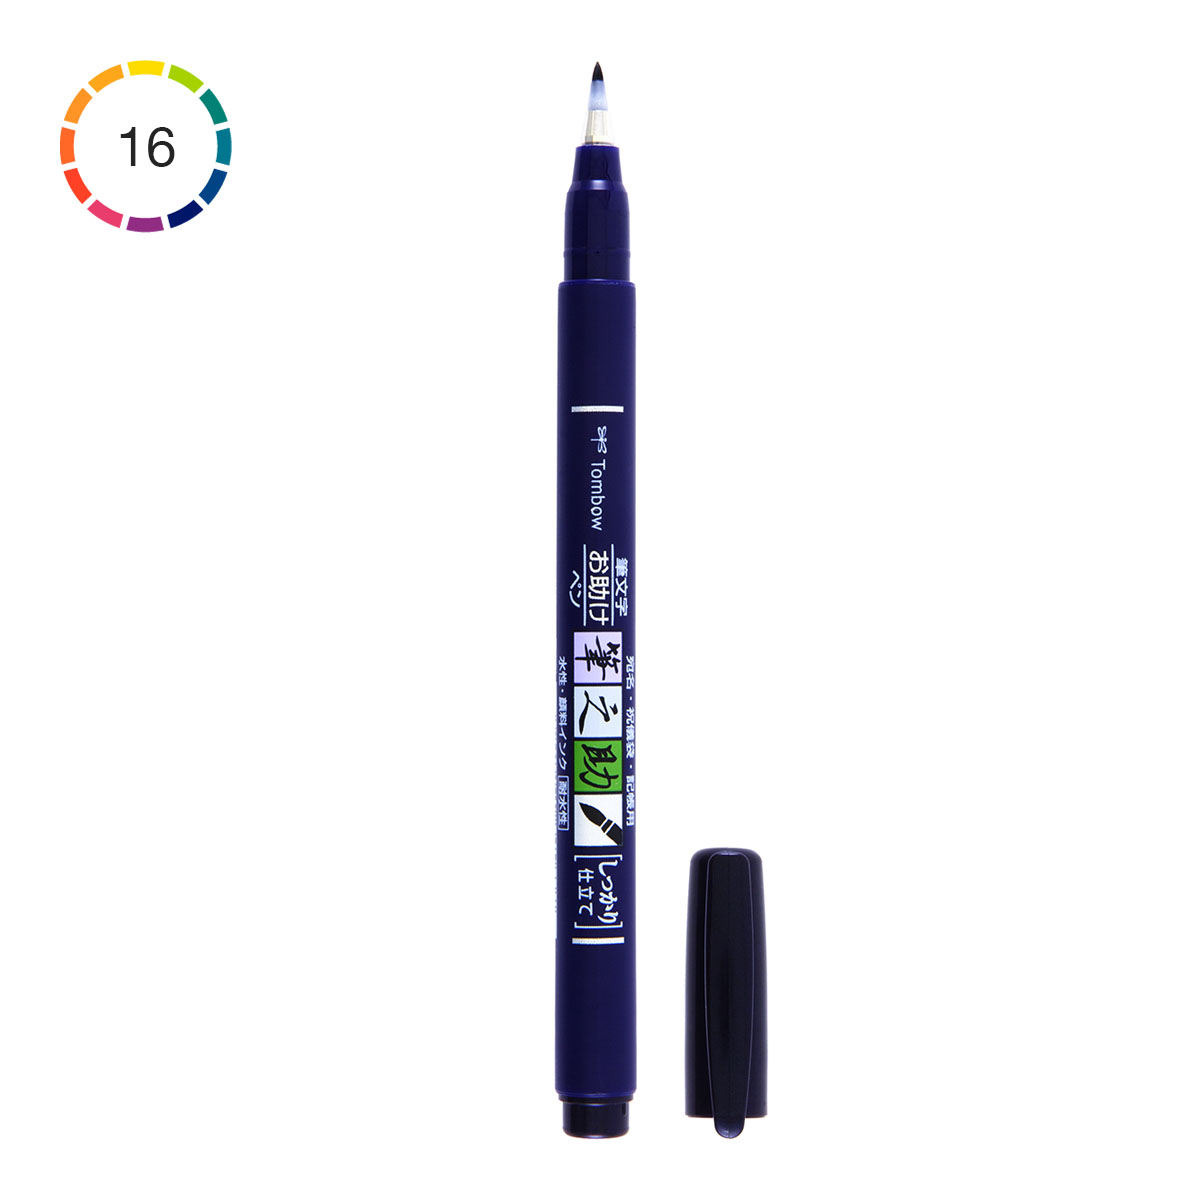 Tombow Fudenosuke Brush Pen WS-BH Hard tip BLACK Water based ink 